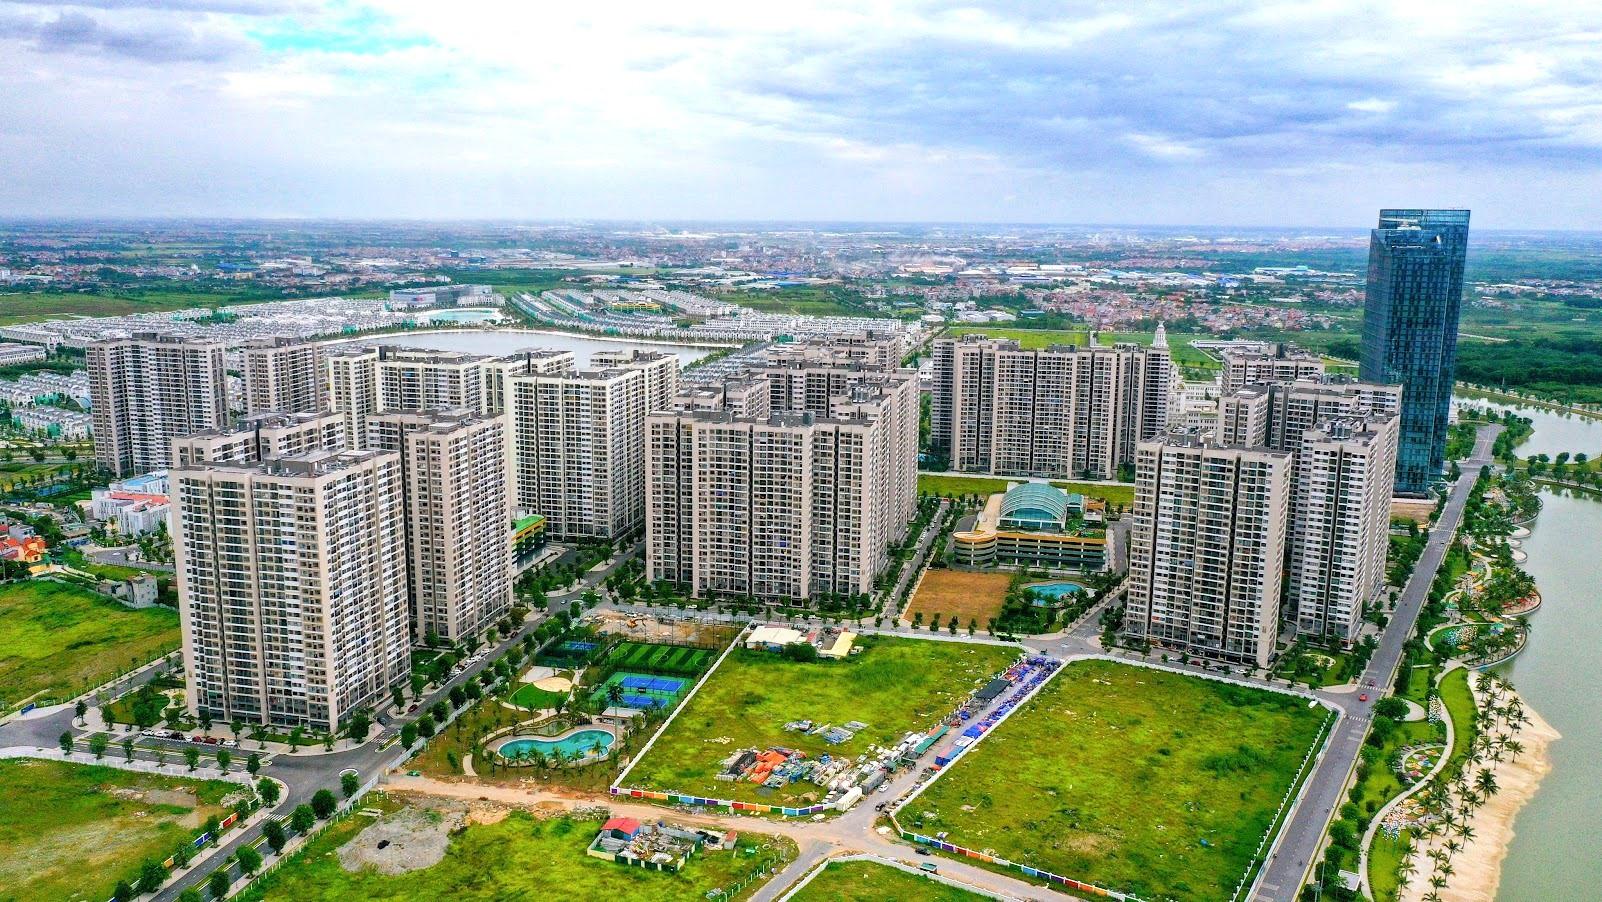 Tài chính không đủ, nhiều người chấp nhận rủi ro mua chung cư không có sổ hồng ở Hà Nội. (Nguồn ảnh: Internet)